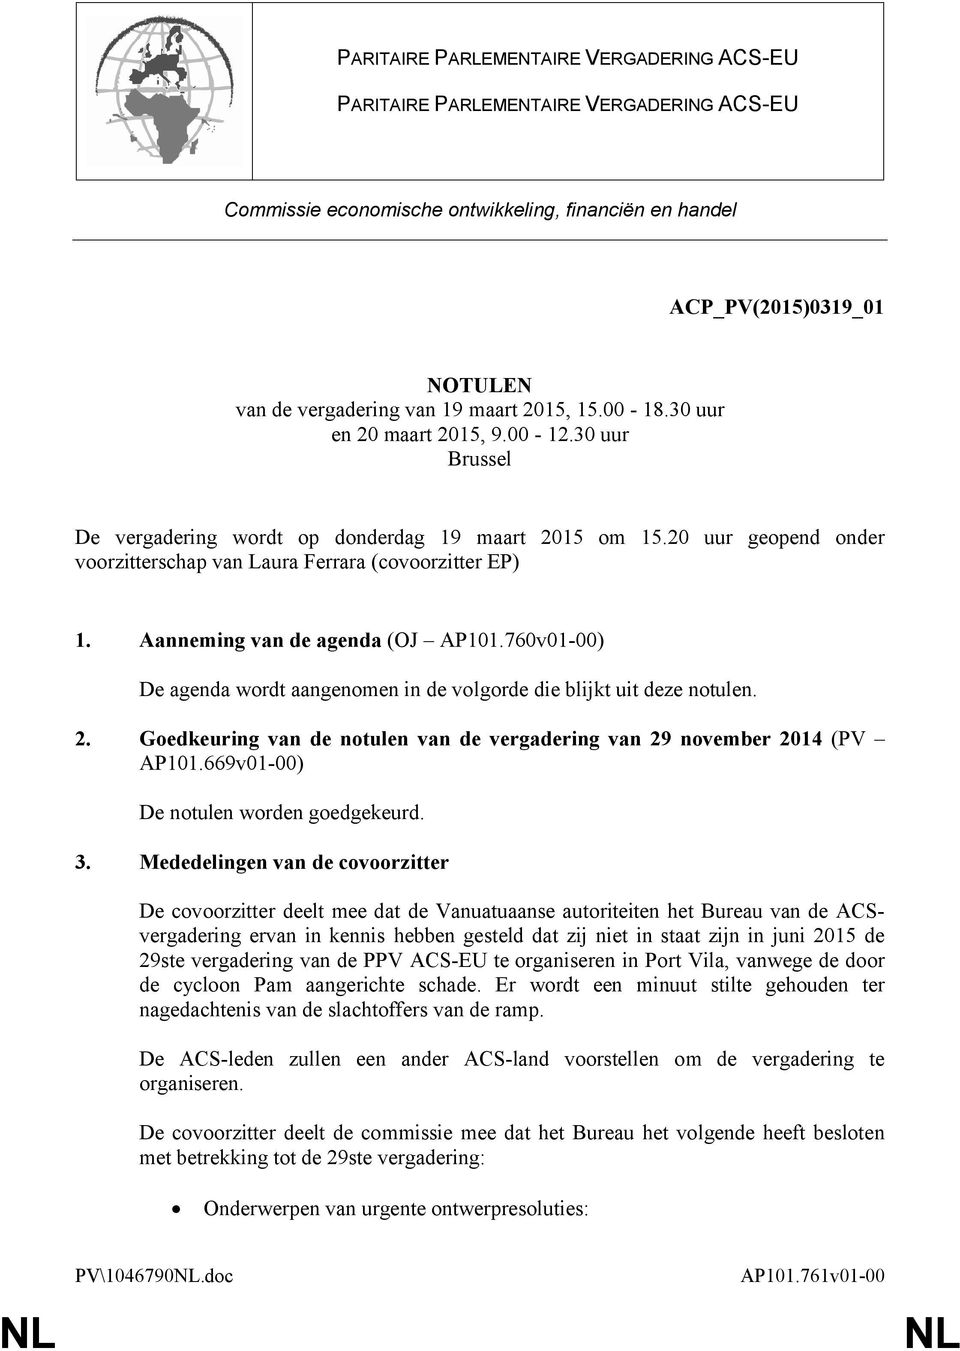 Aanneming van de agenda (OJ AP101.760v01-00) De agenda wordt aangenomen in de volgorde die blijkt uit deze notulen. 2. Goedkeuring van de notulen van de vergadering van 29 november 2014 (PV AP101.